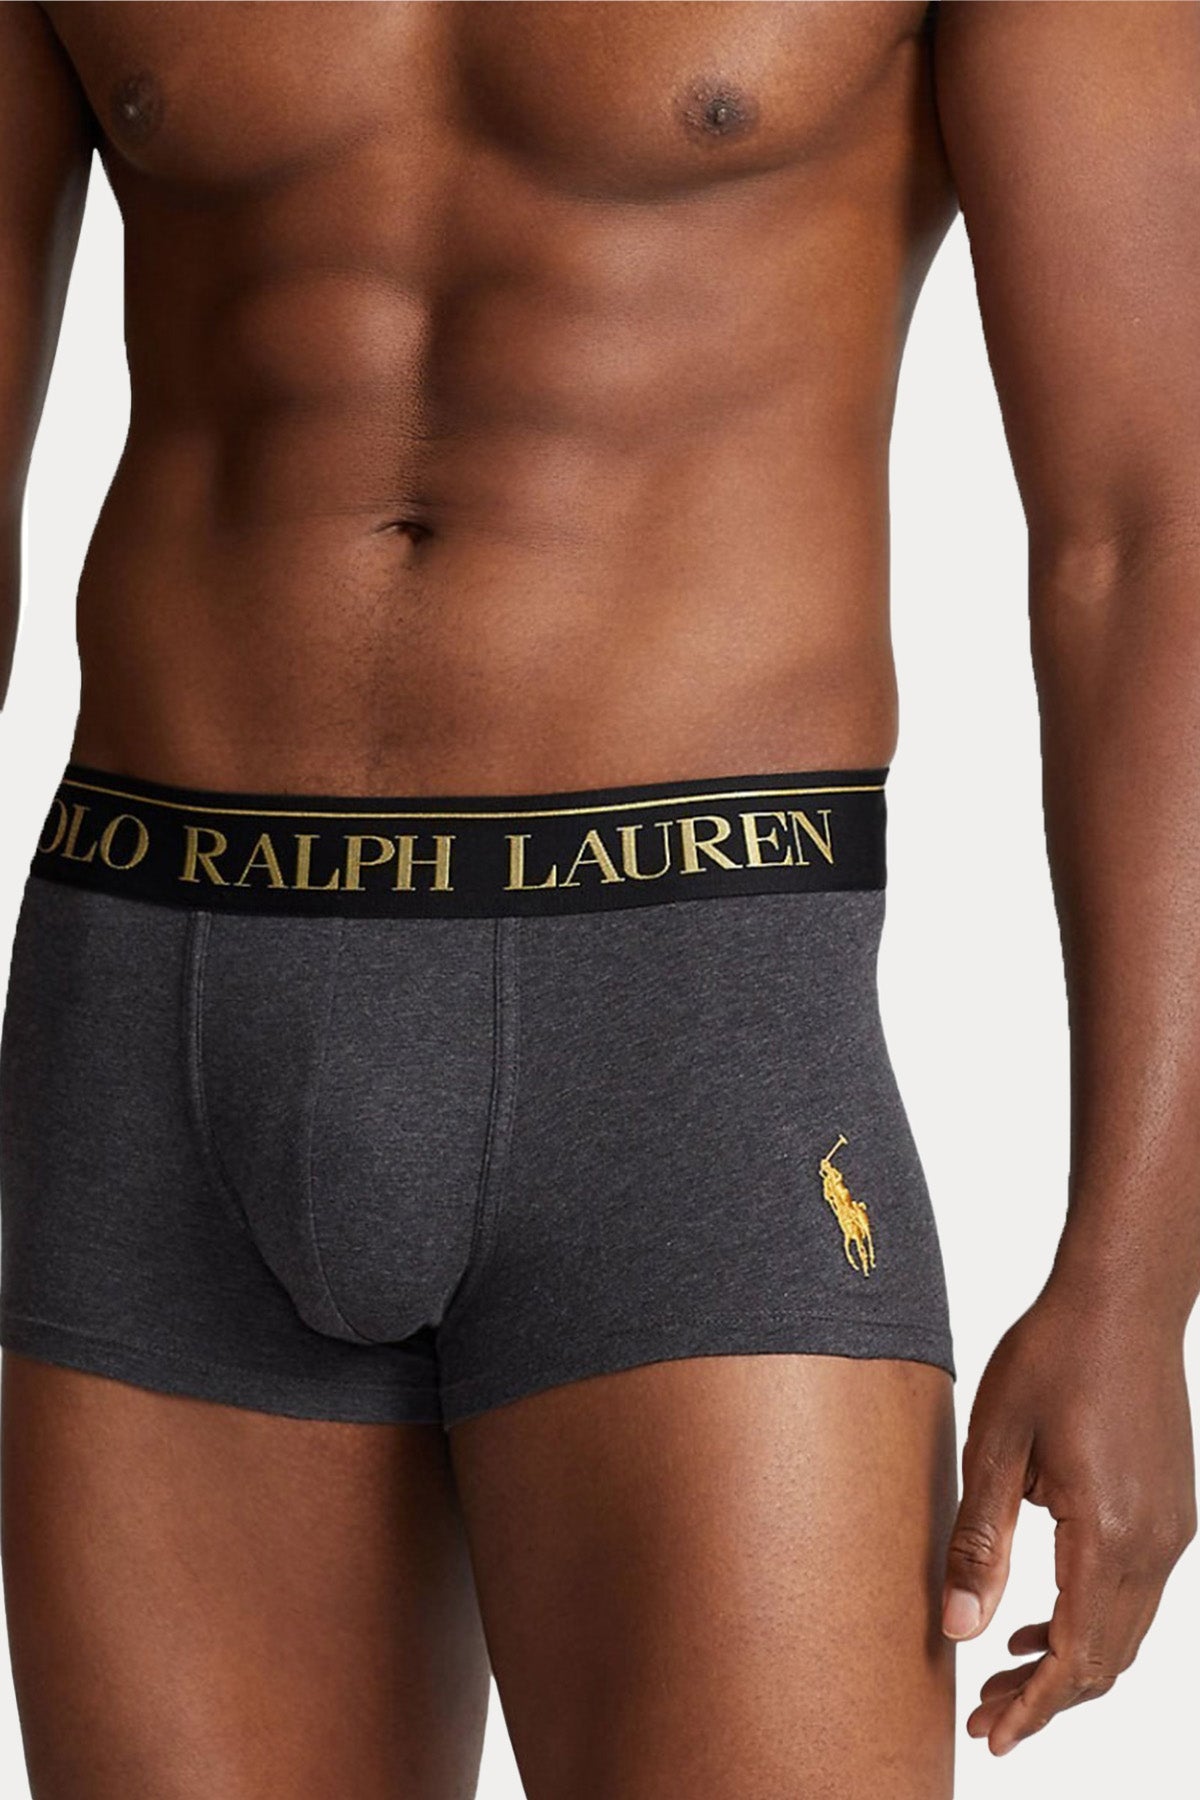 Polo Ralph Lauren Polo Bear 2'li Paket Streç Pamuklu Boxer-Libas Trendy Fashion Store